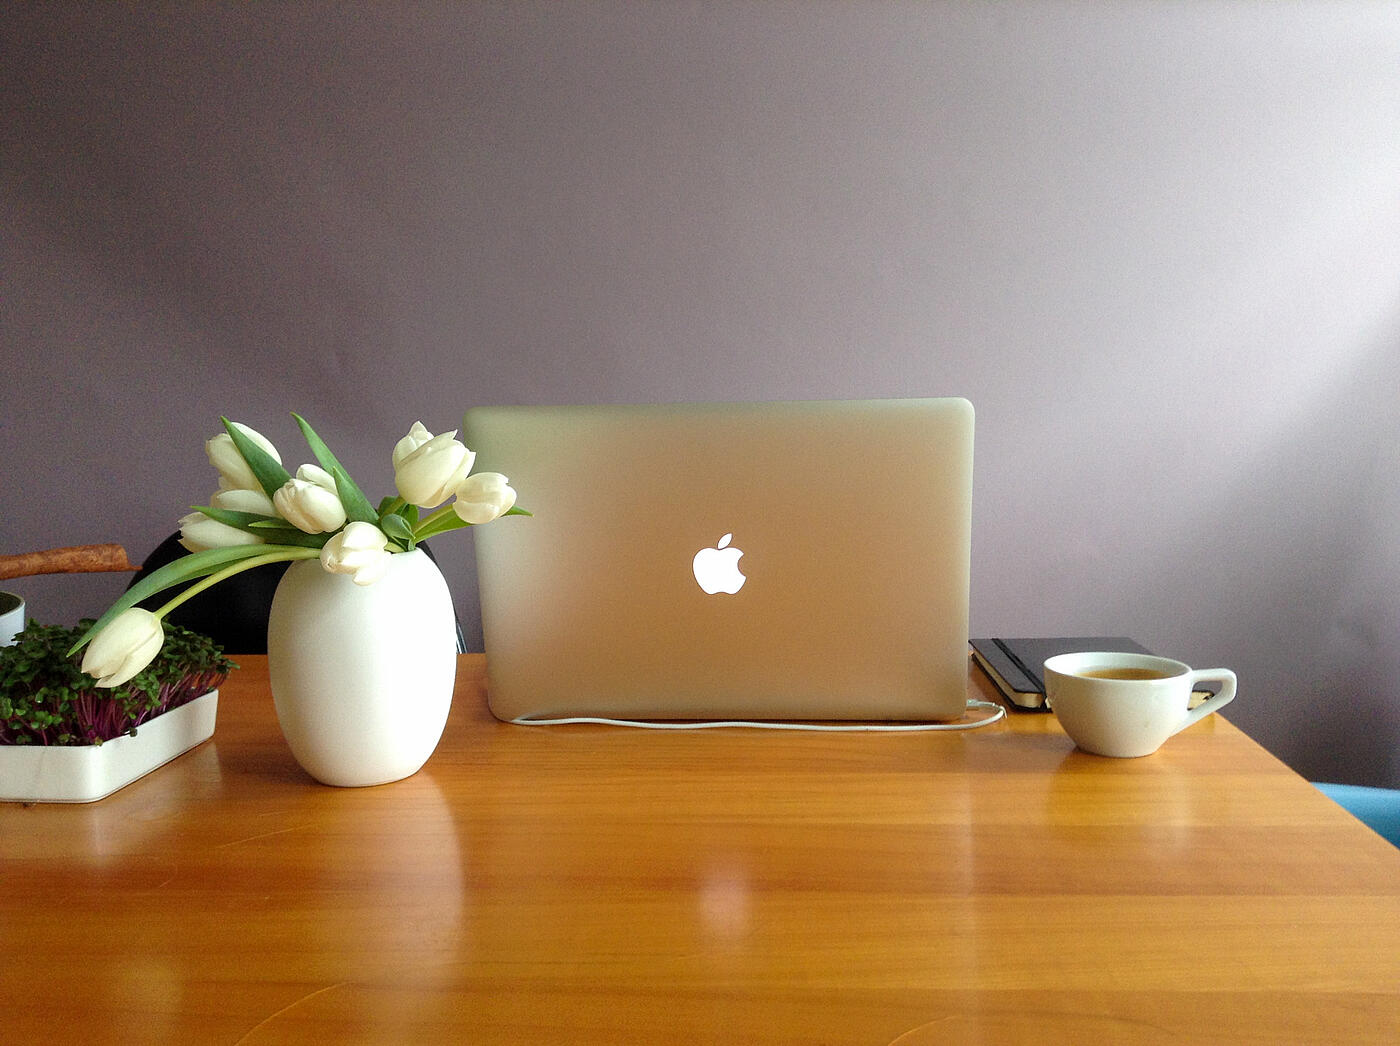 Ein aufgeklapptes Macbook auf einem Schreibtisch, daneben eine weiße Blumenvase mit Tulpen und eine Kaffeetasse.